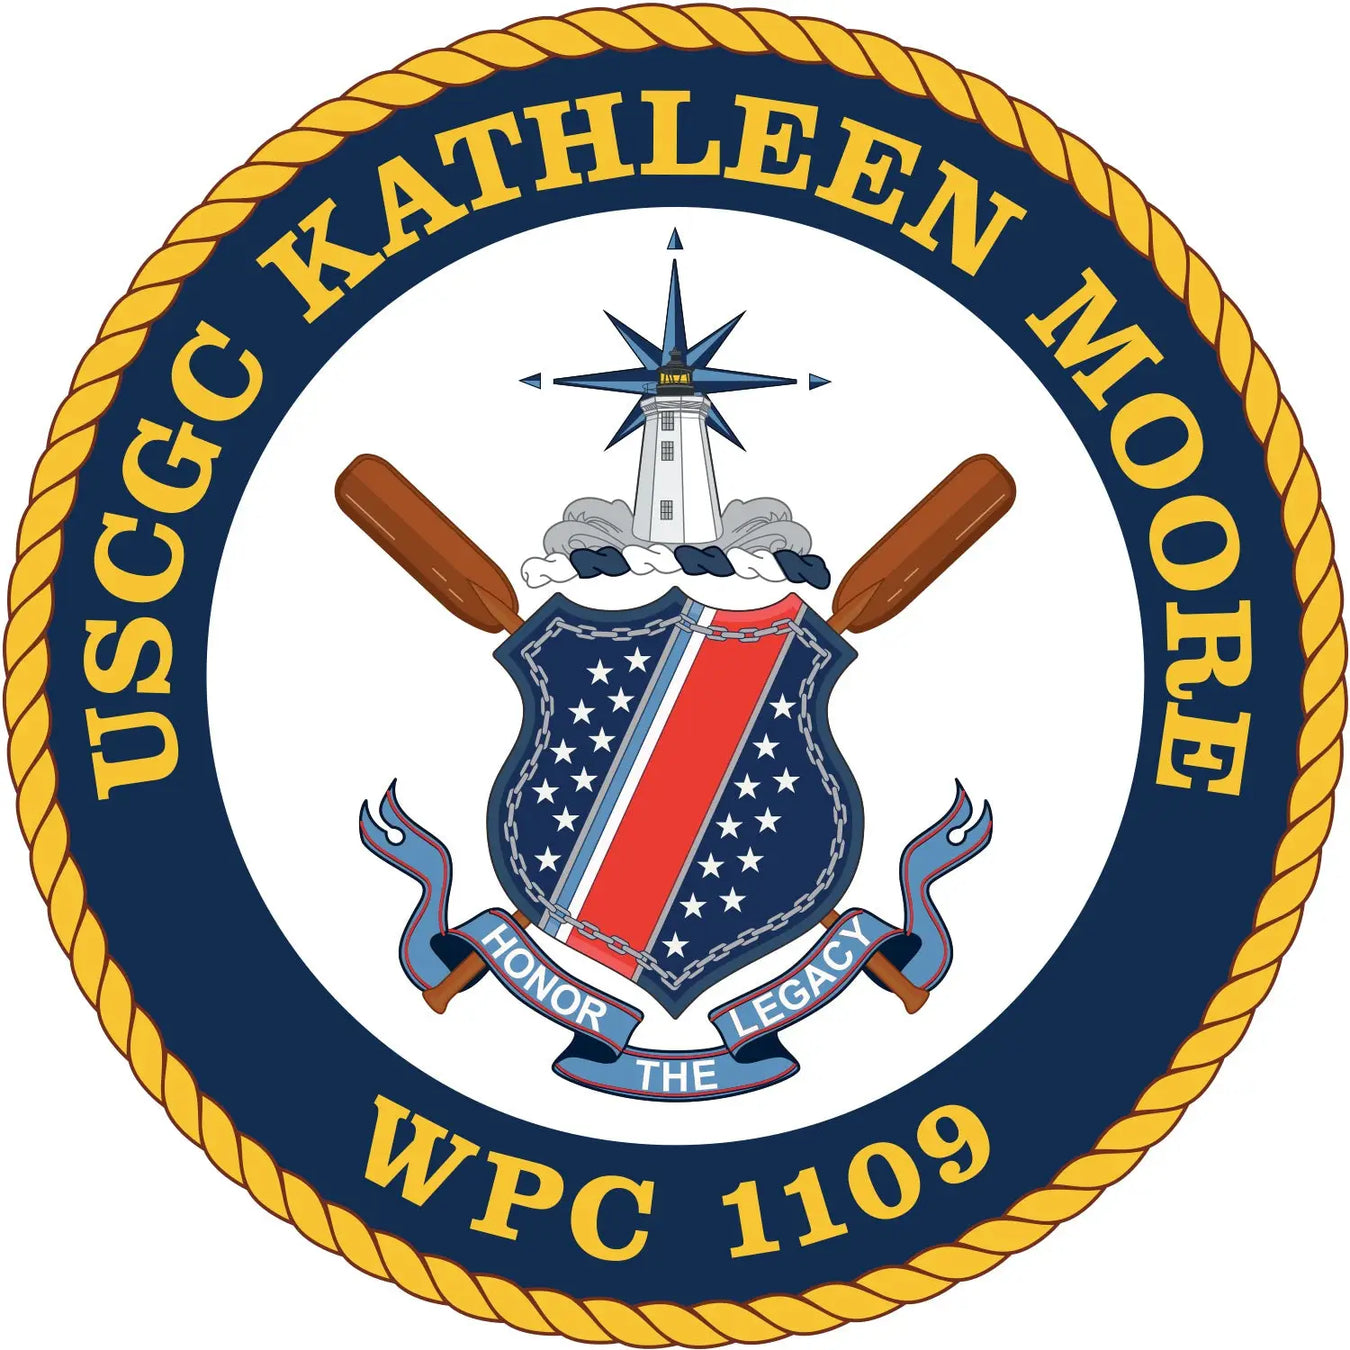 USCGC Kathleen Moore (WPC-1109)